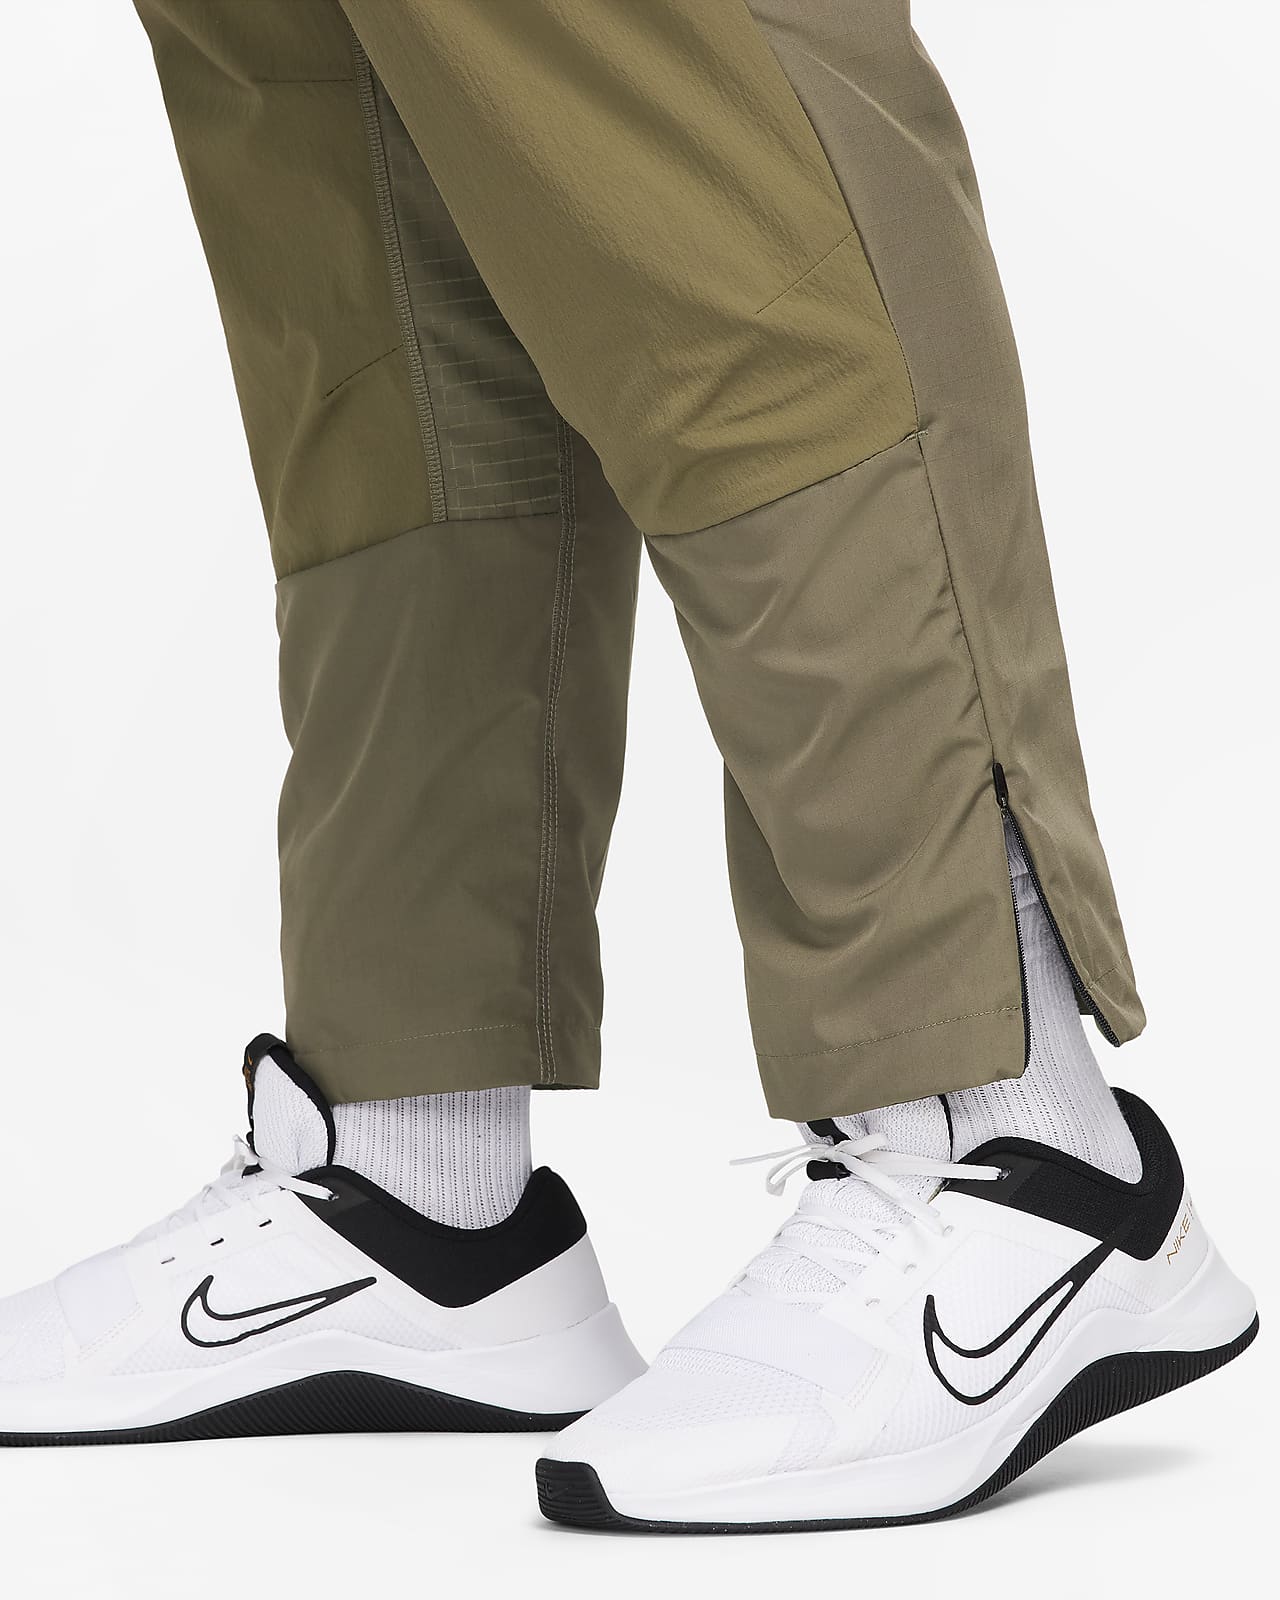 Dri-FIT Versatile A.P.S. Woven ADV Nike Men\'s Pants.